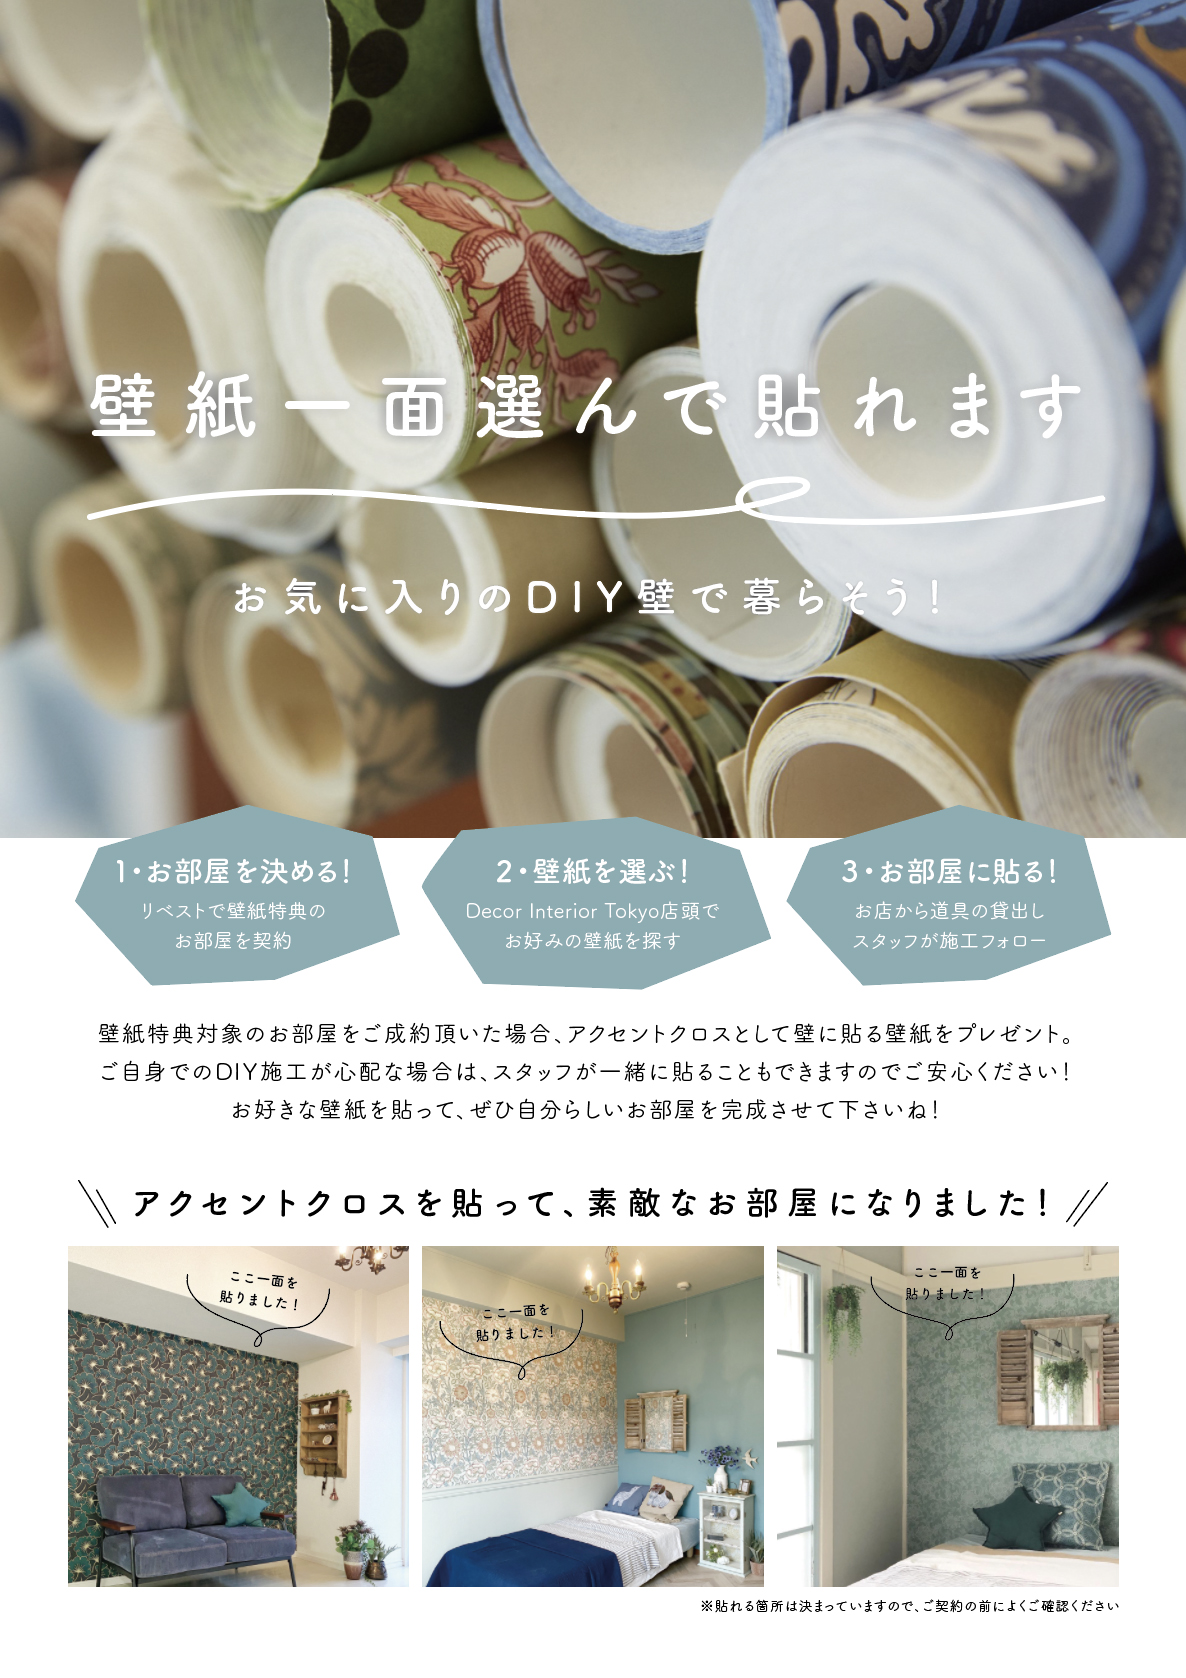 #吉祥寺に住みたいーDecor Interior Tokyoがプロデュースするお部屋紹介 第2弾！